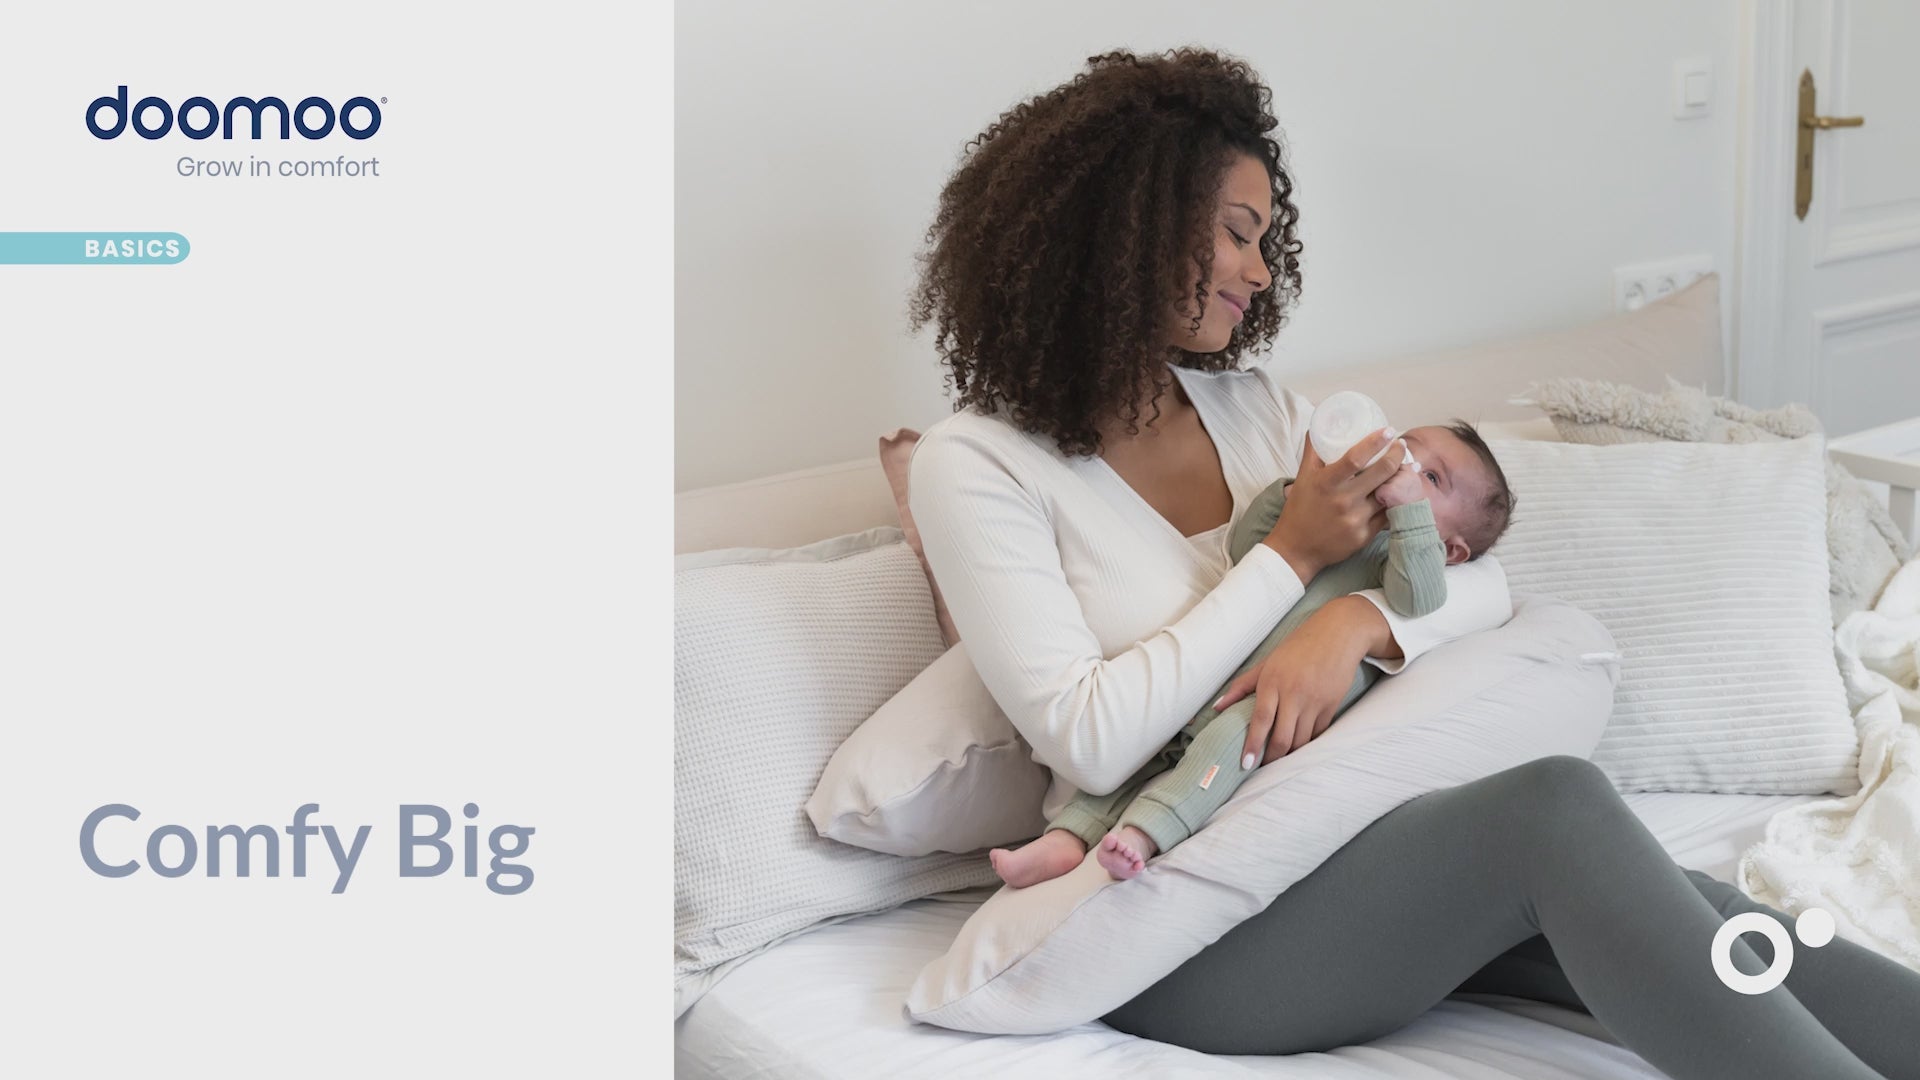 Grand coussin de grossesse et de maternité en mousseline de coton biologique. Pour dormir, allaiter et se détendre confortablement. Garni de microperles très fines pour un confort optimal.